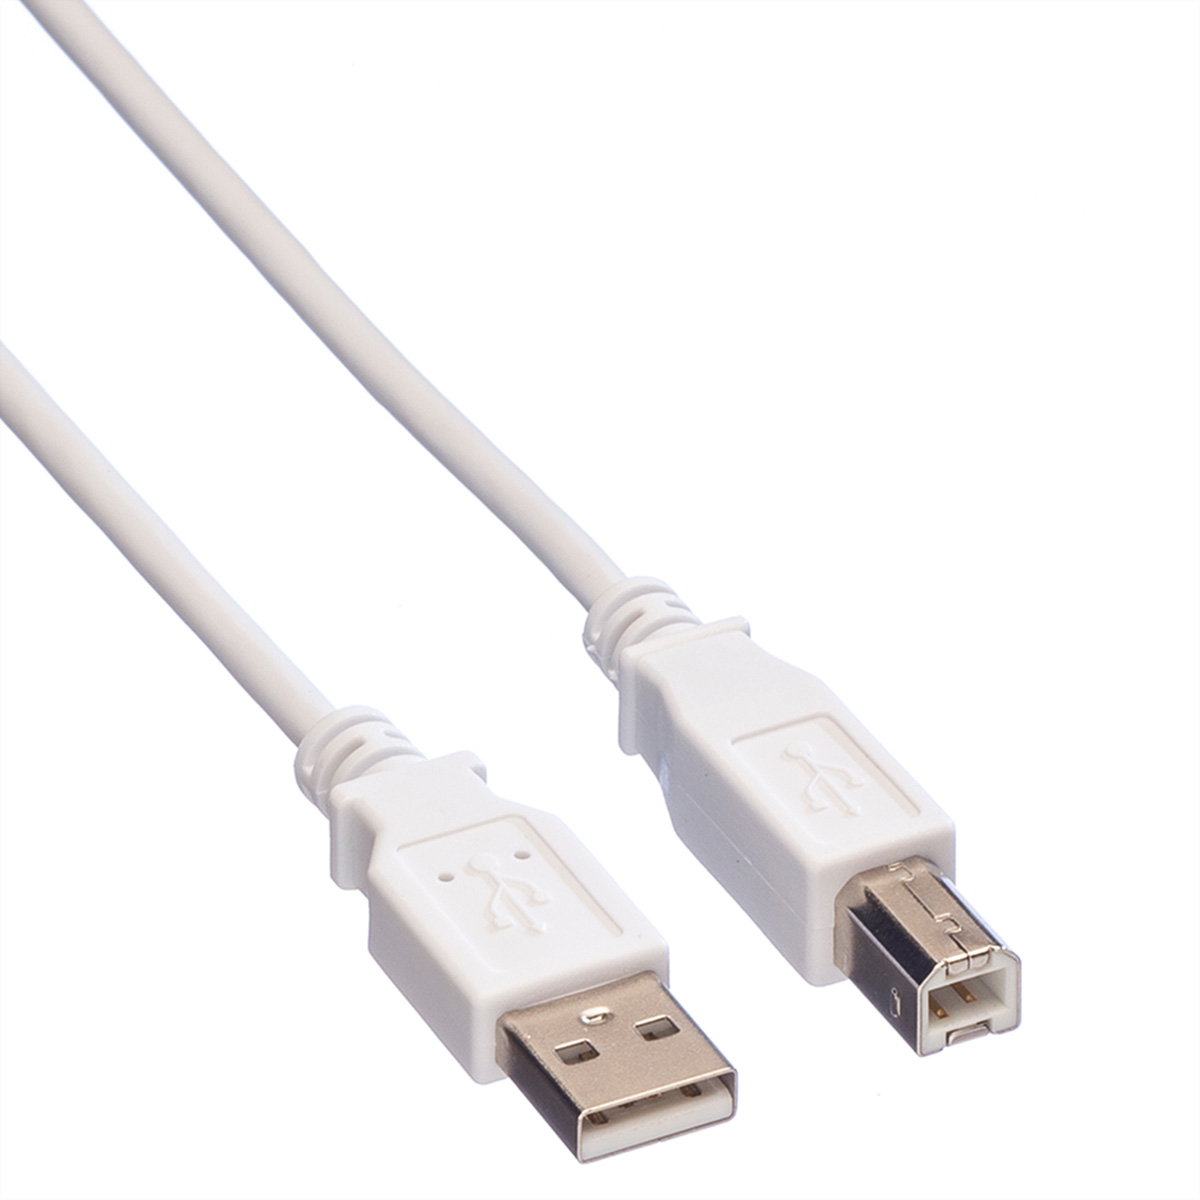 2.0 USB VALUE Kabel Kabel USB 2.0